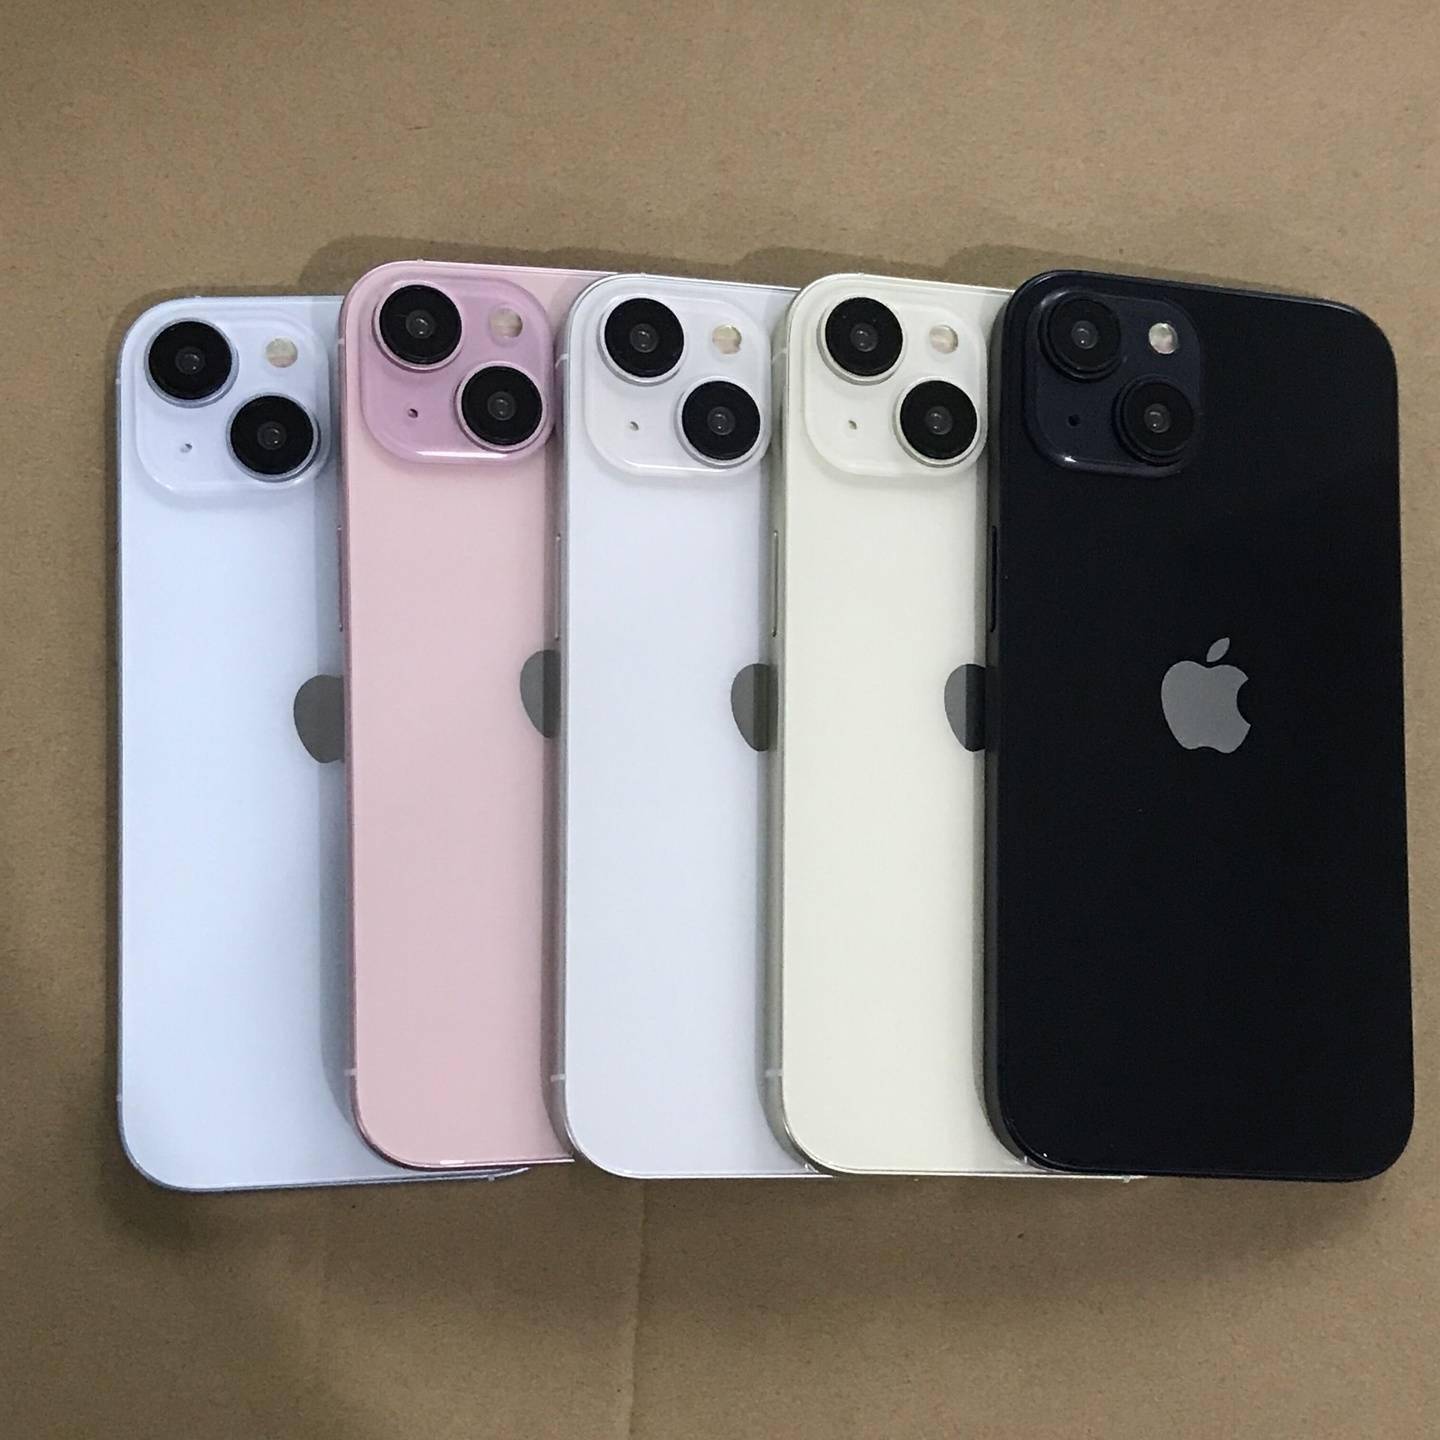 苹果 iPhone 15 和 iPhone 15 Pro 机模展示 新机颜色外观曝光图片 第8张